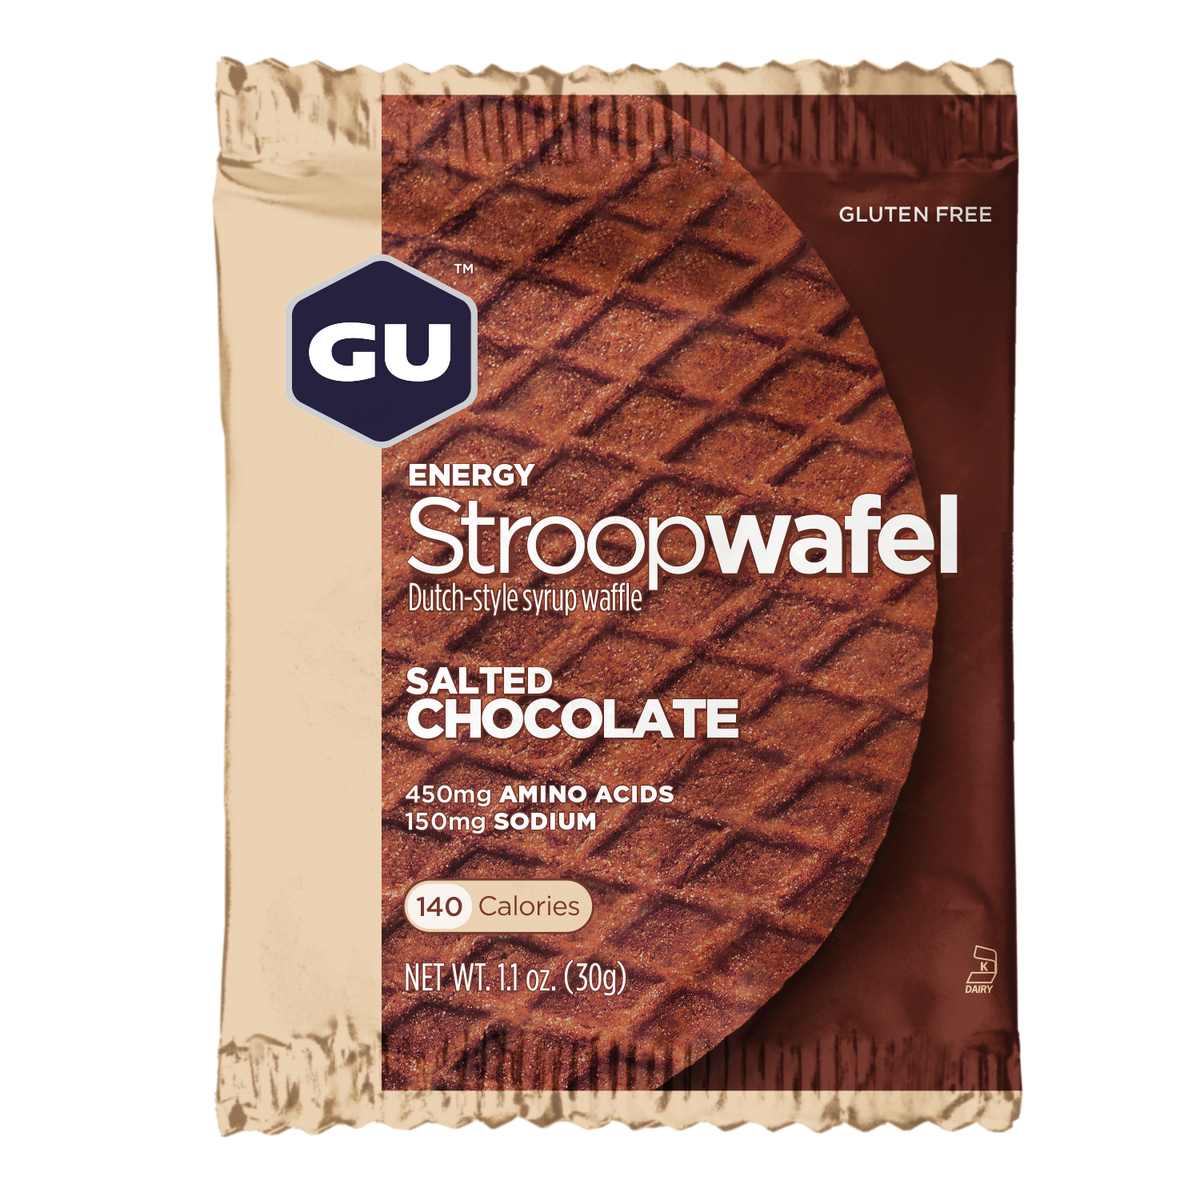 GU Energy - Stroopwafel - Salted Chocolate (Gluten Free)